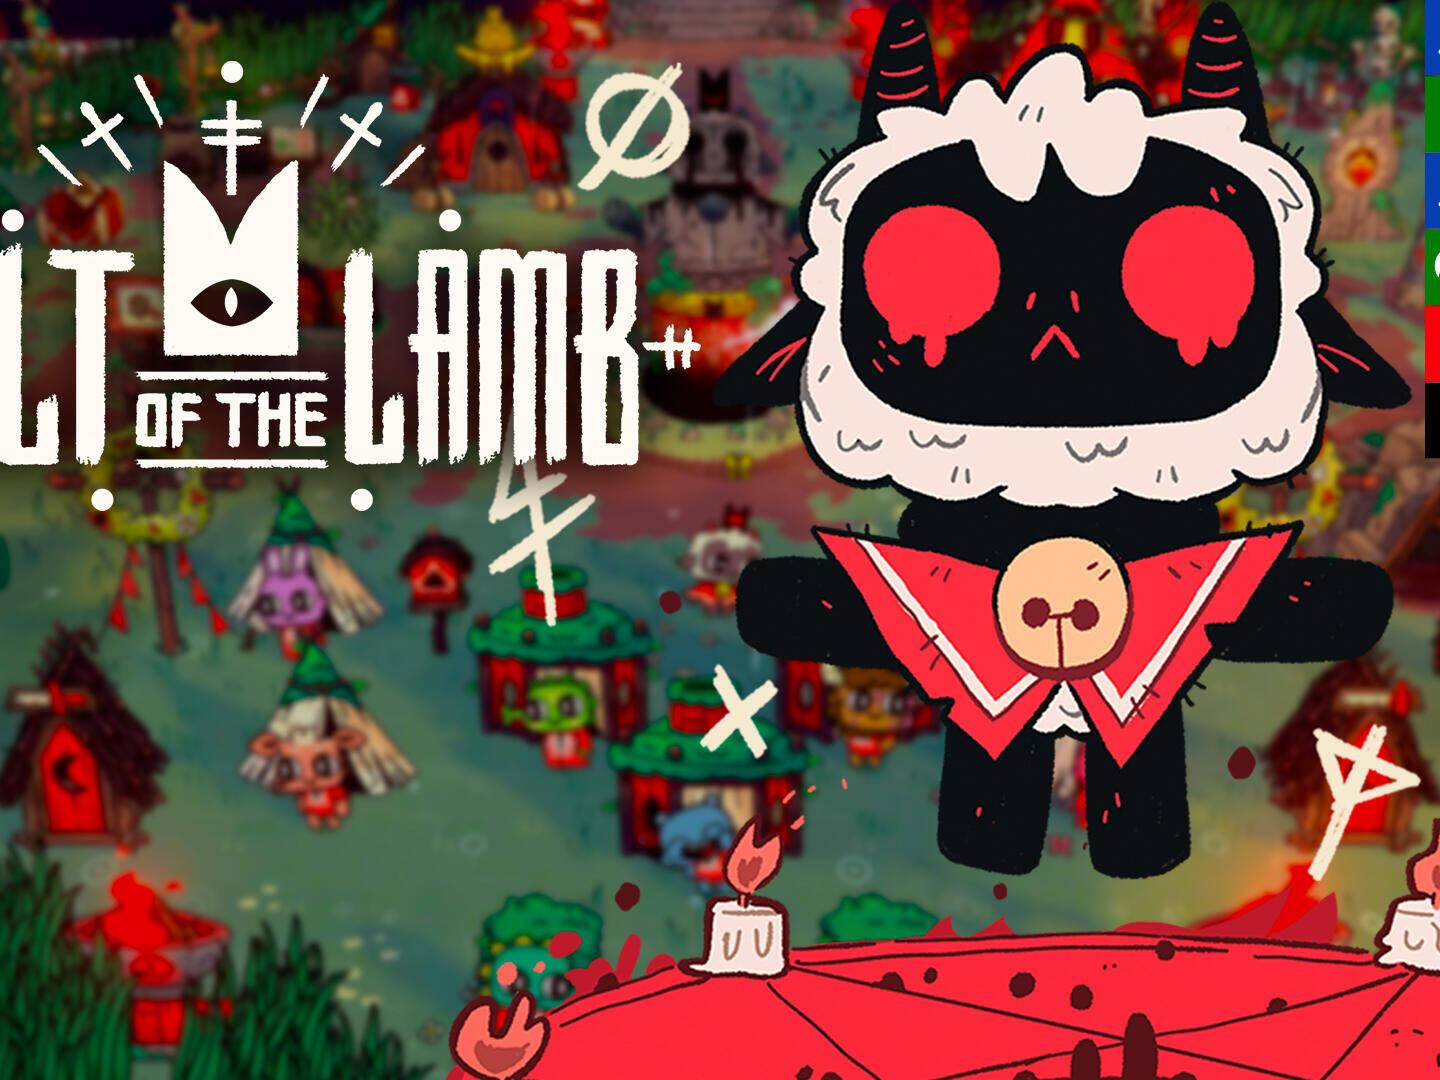 Análise: Cult of the Lamb (Multi) — montando um culto em um universo fofo e  macabro - GameBlast